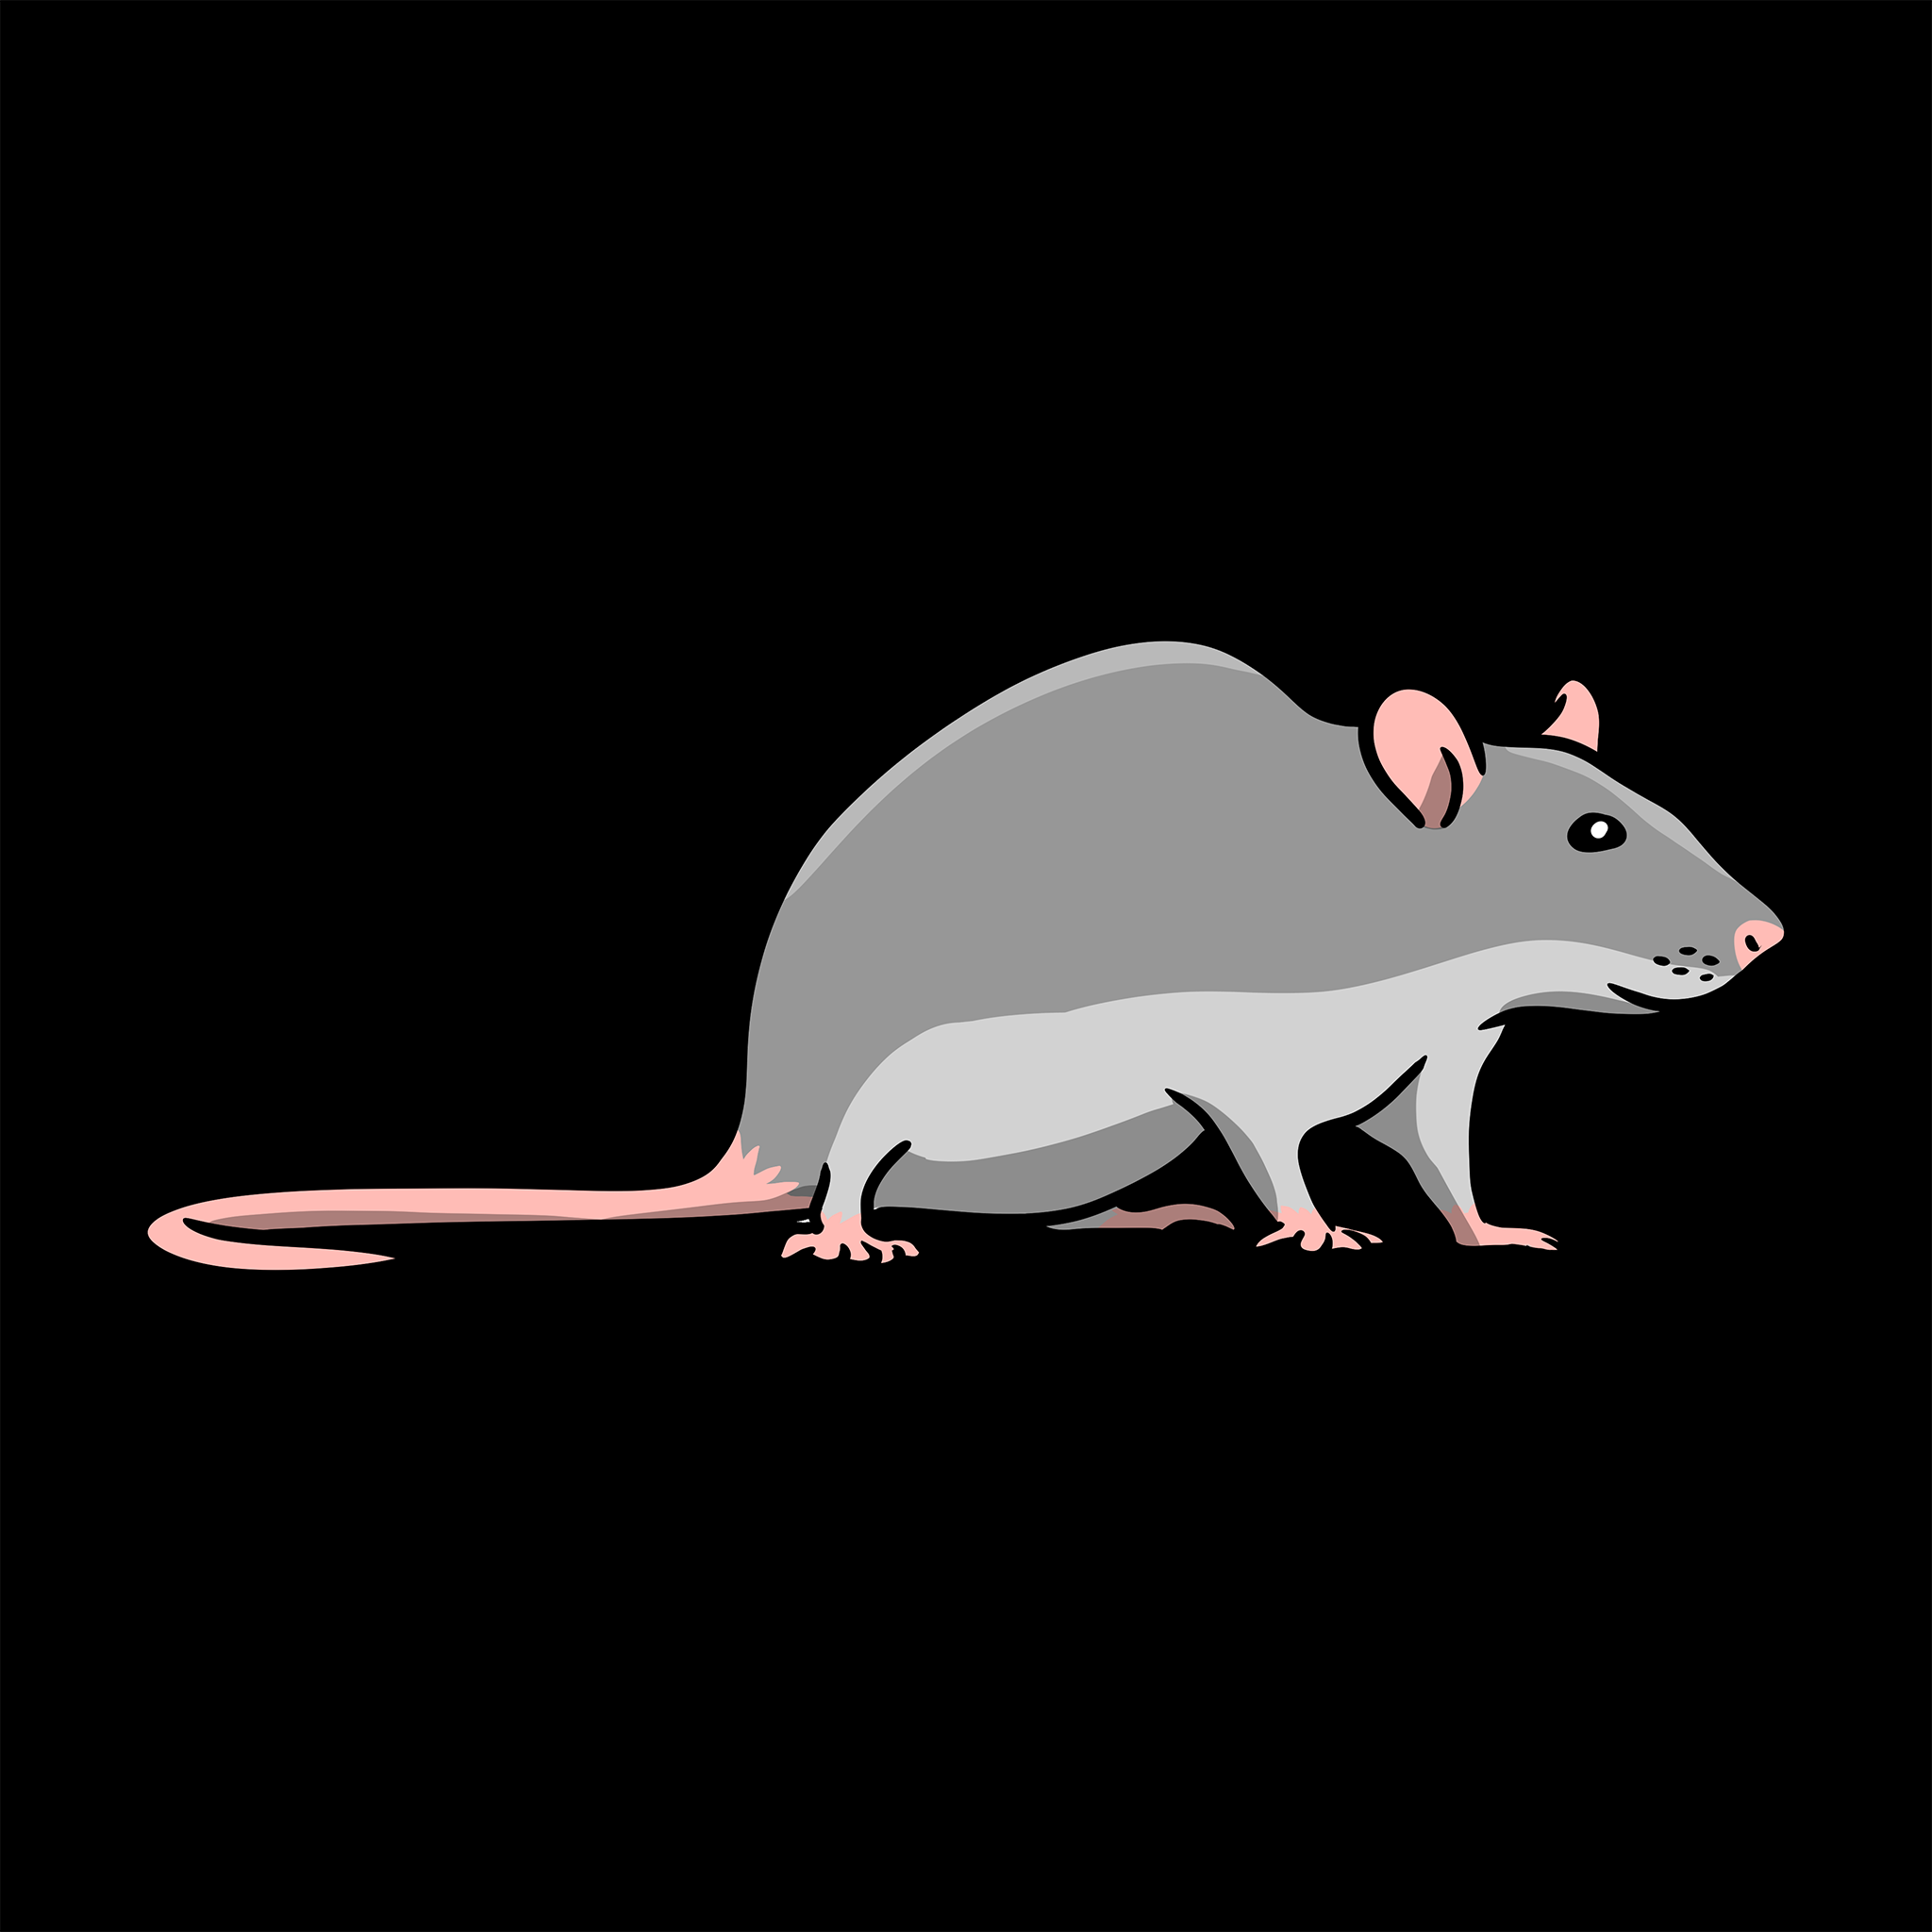 Live Rats-Live Rats